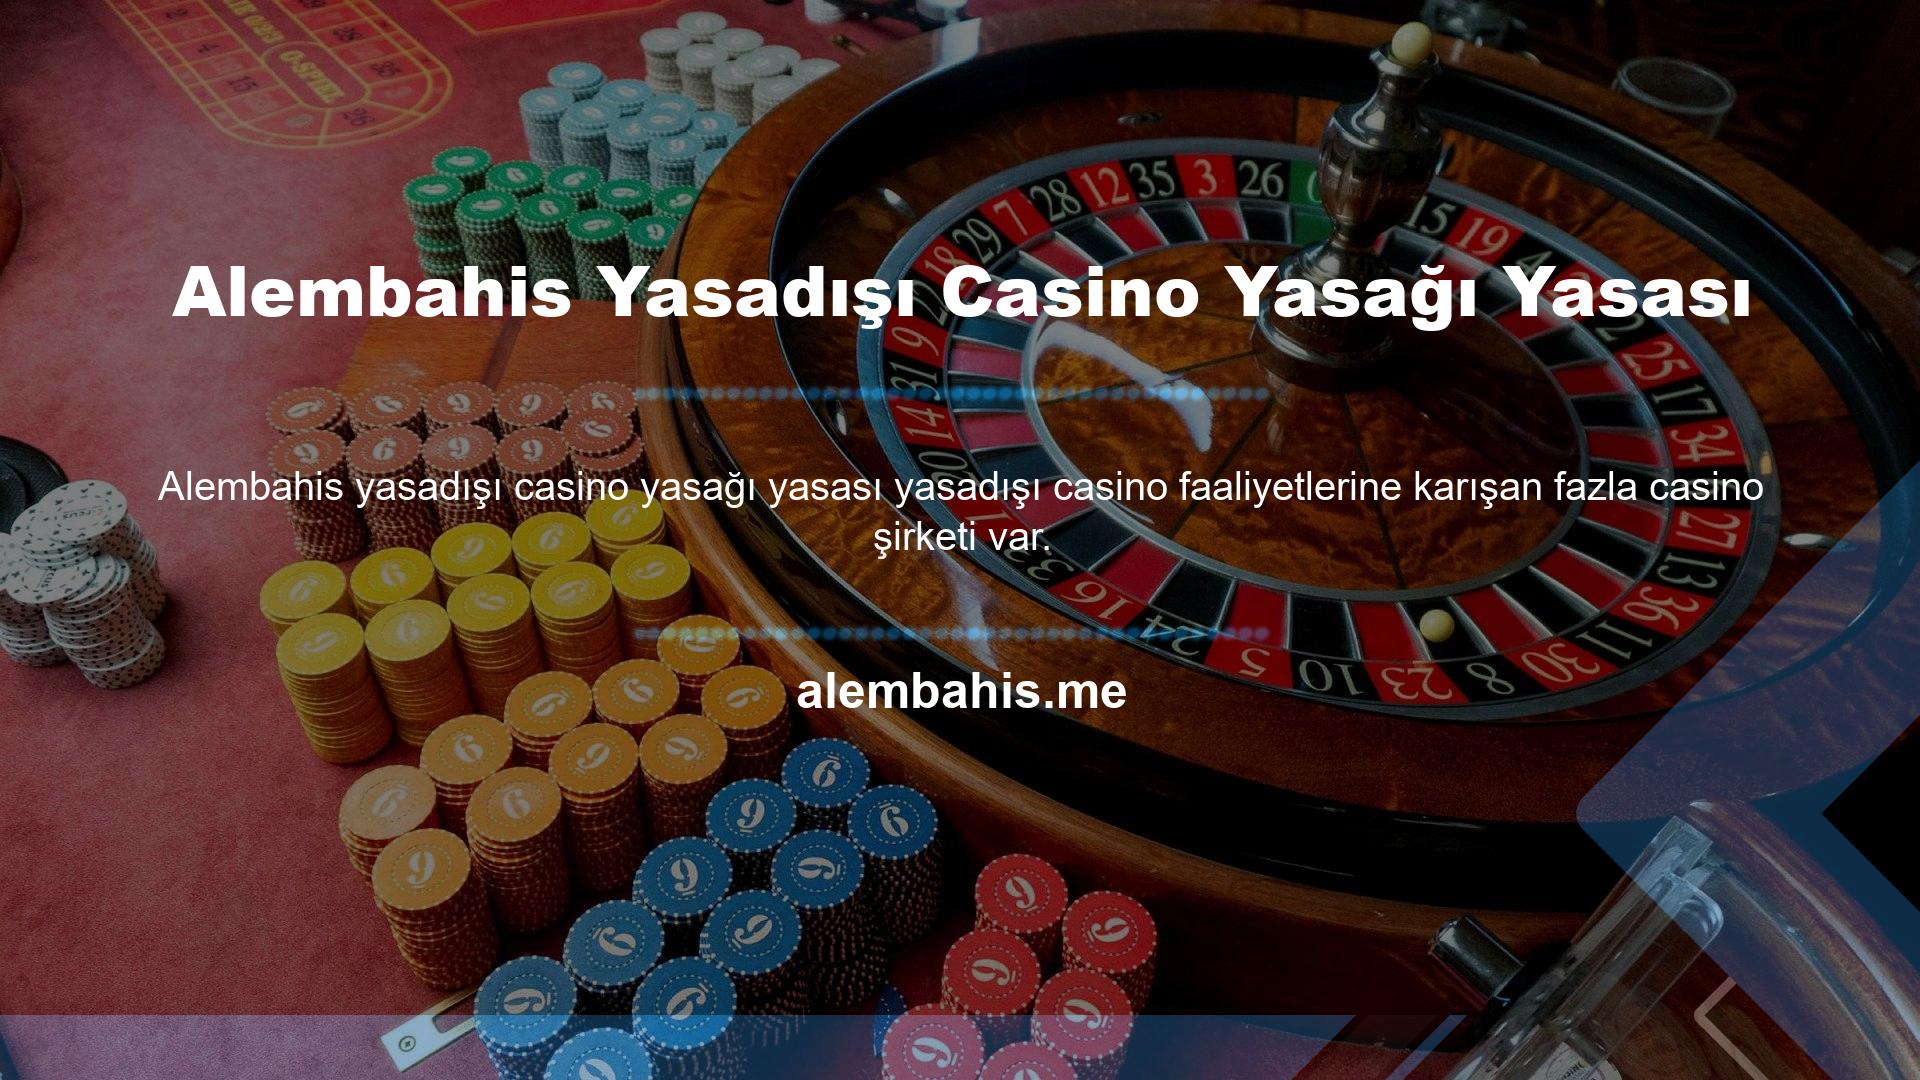 Casino sitelerinin sayısının çokluğu kullanıcılar arasında soru işaretlerine neden olmaktadır